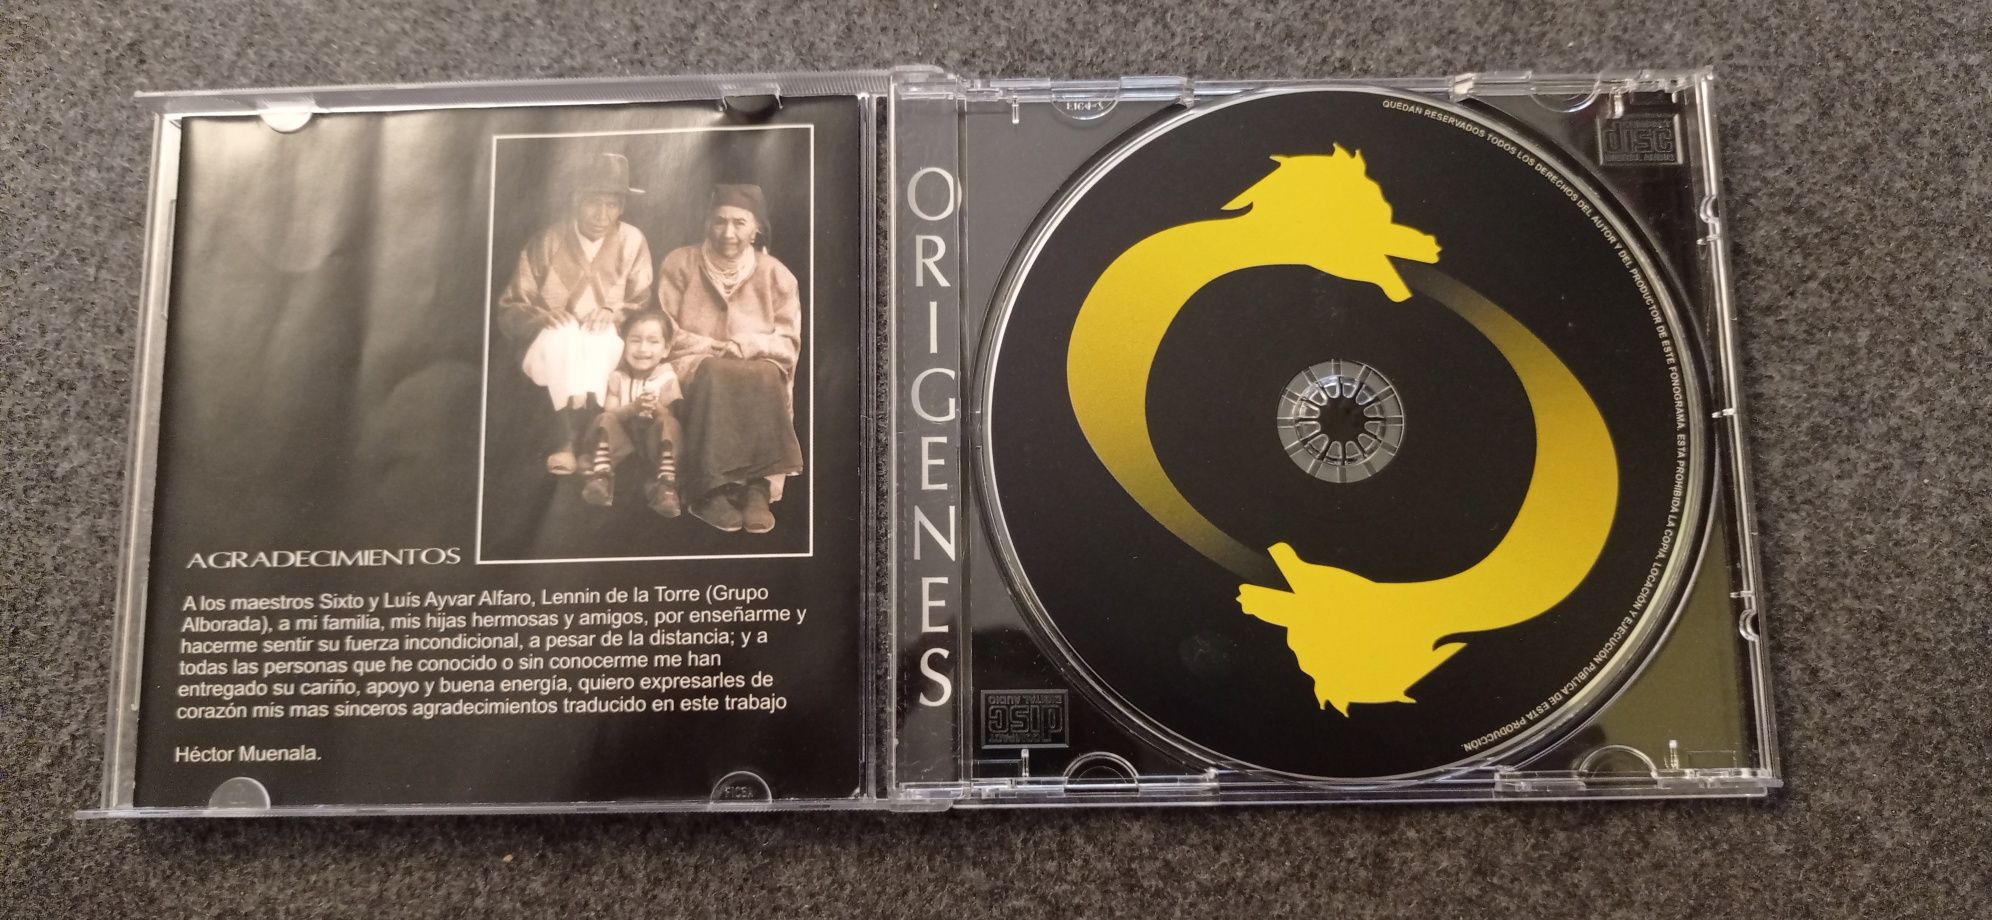 ORIGENES esperitu de los Andes CD